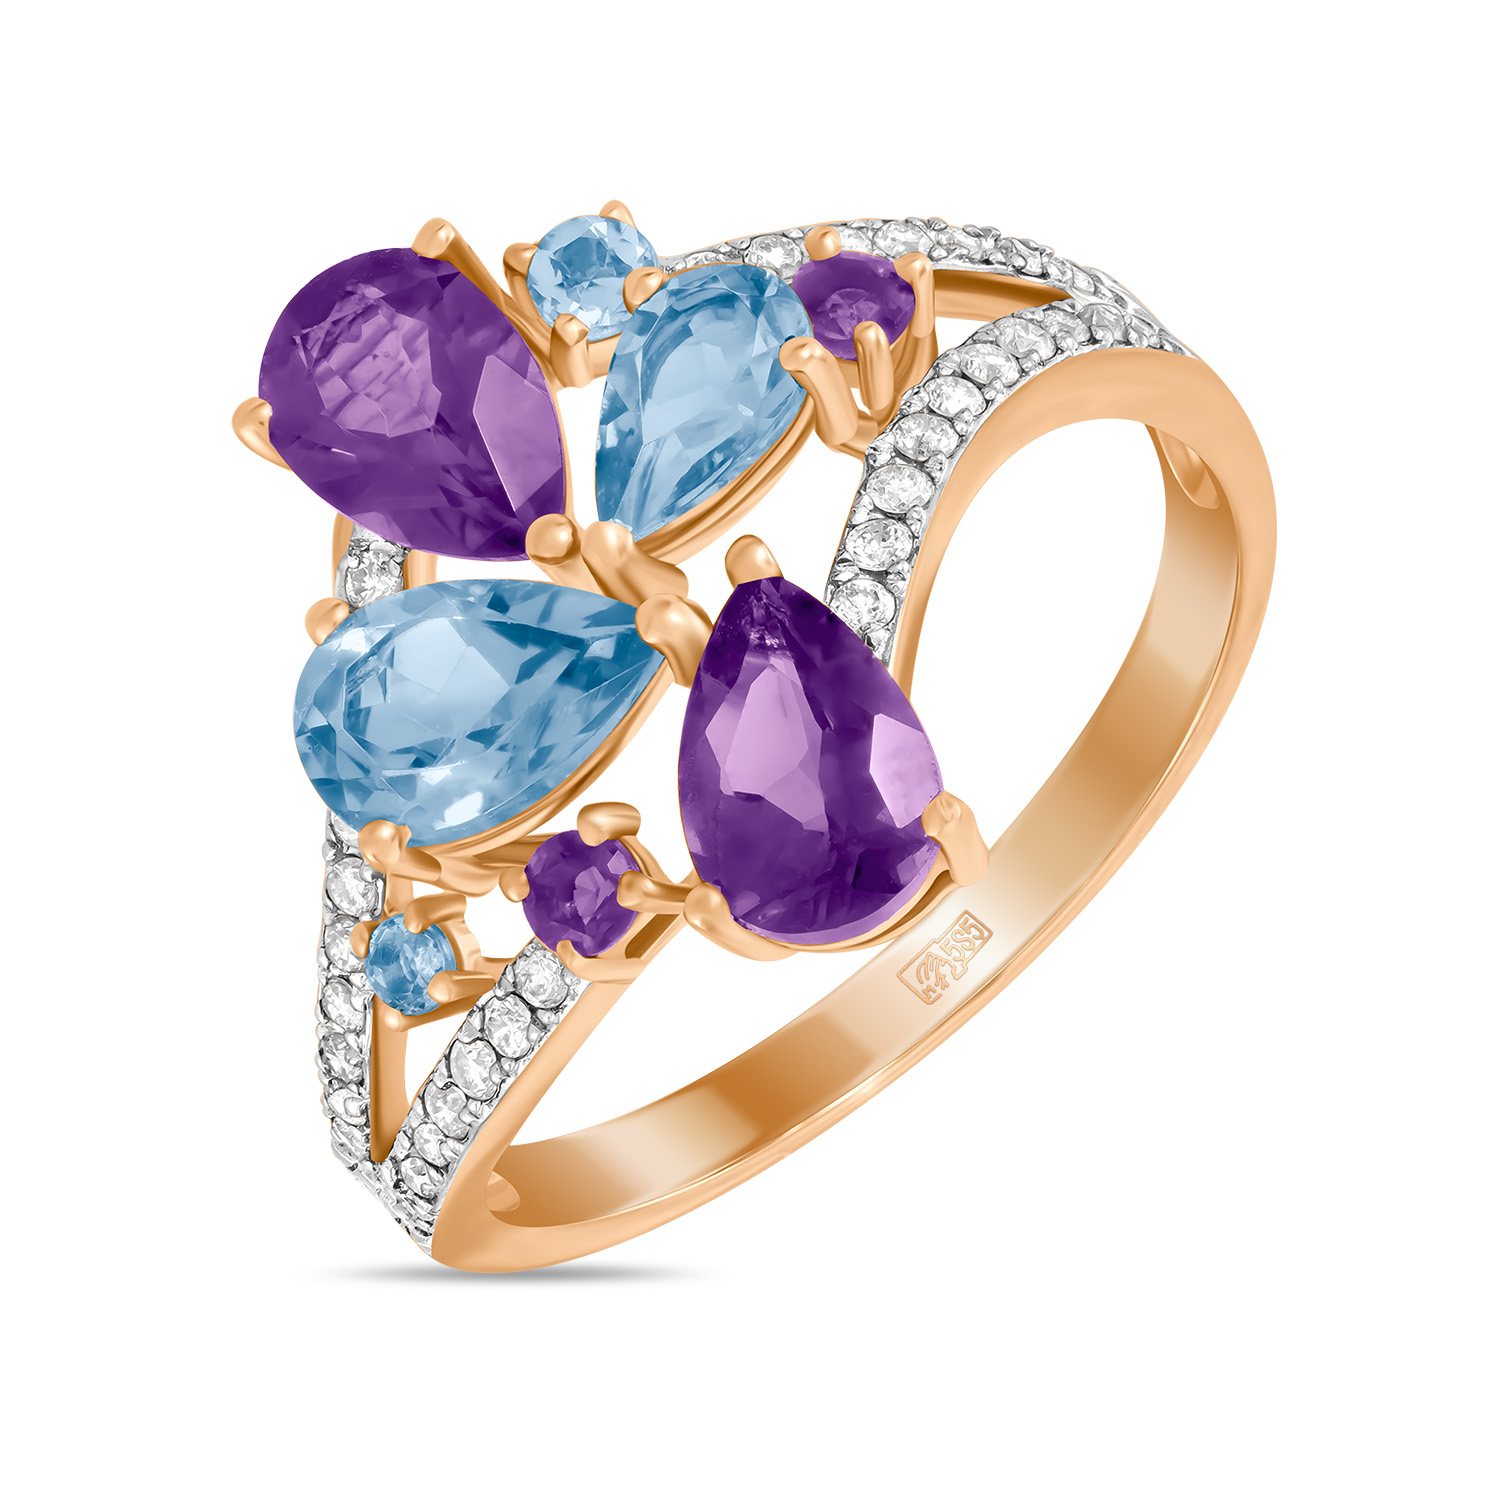 Кольца МЮЗ Золотое кольцо с аметистами, топазом и бриллиантами кольца мюз золотое кольцо с аметистами топазом бриллиантами и хризолитом